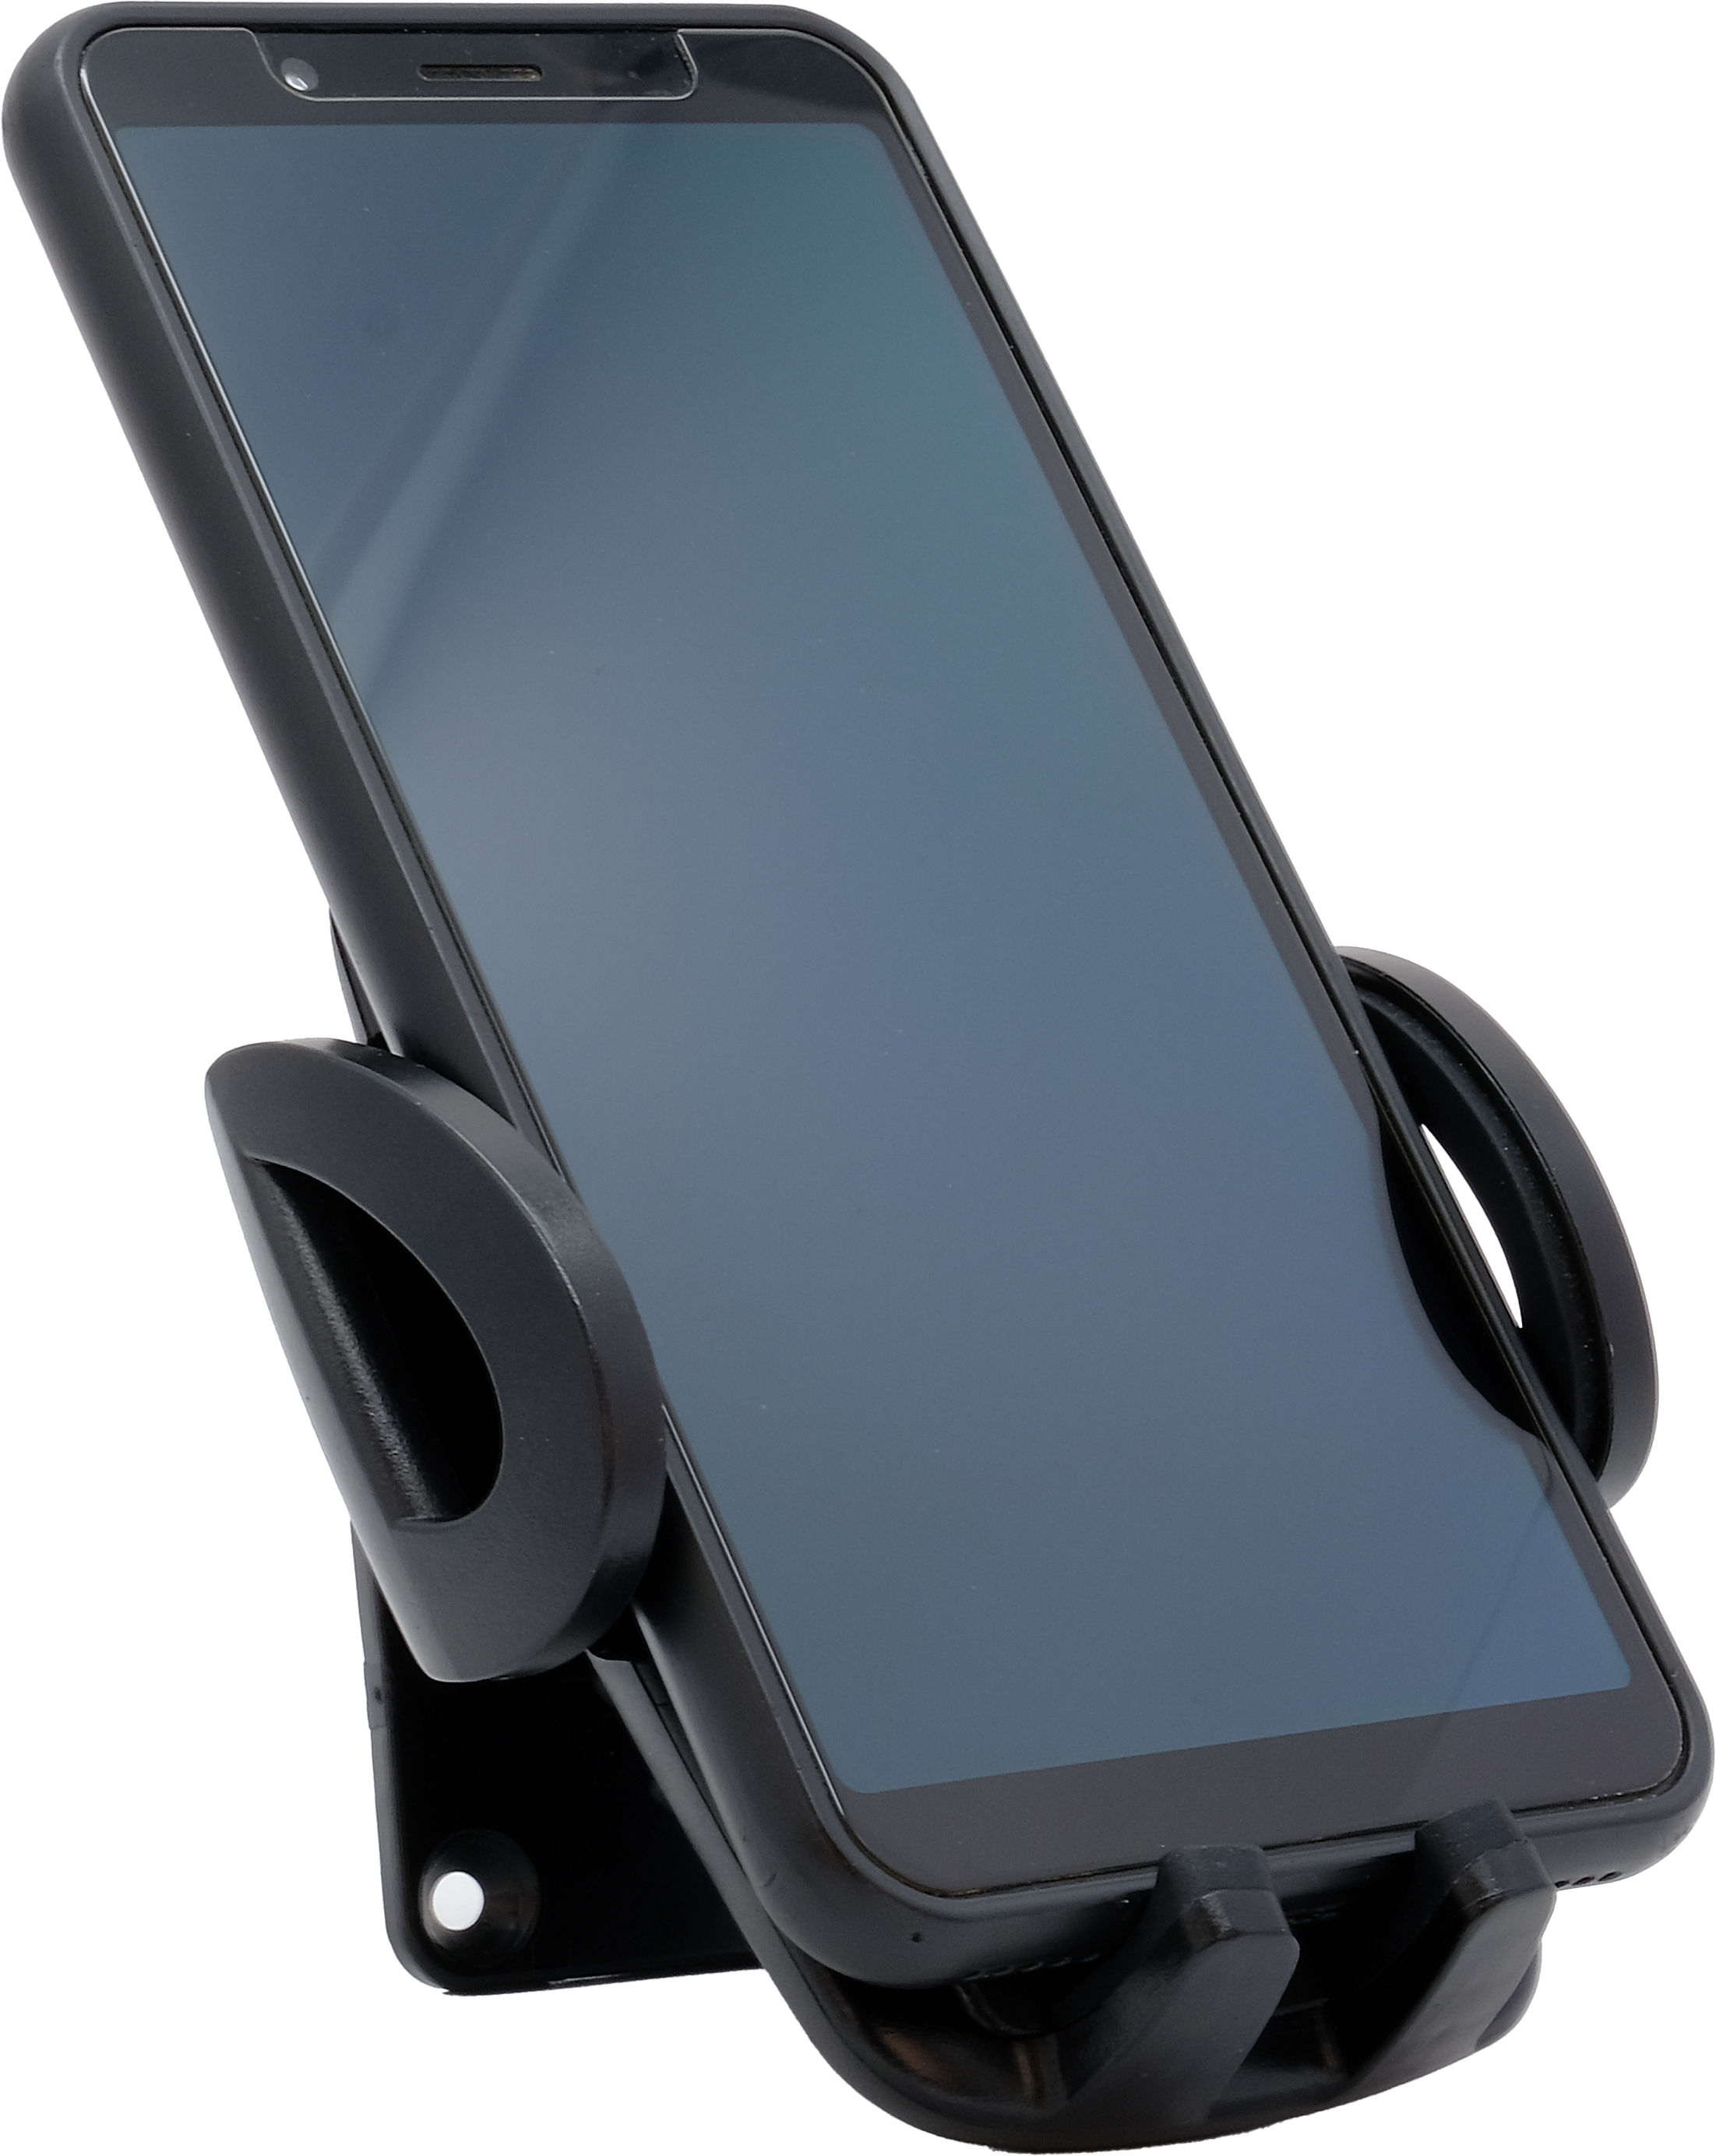 Universalhalter Für Smartphones mit Qi wireless Ladefunktion - 718300